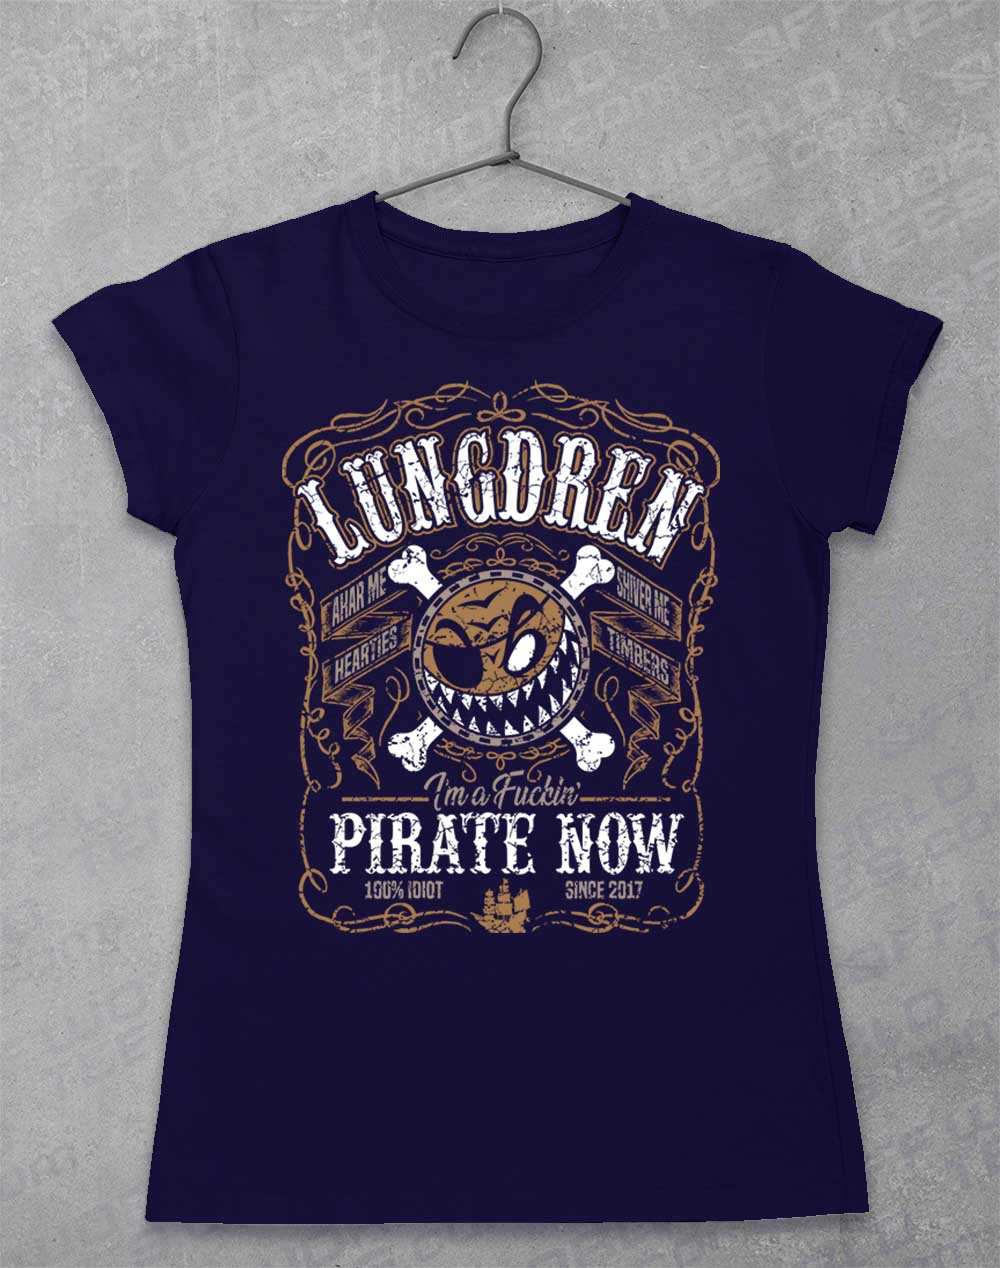 Navy - LUNGDREN Pirate Now Women's T-Shirt